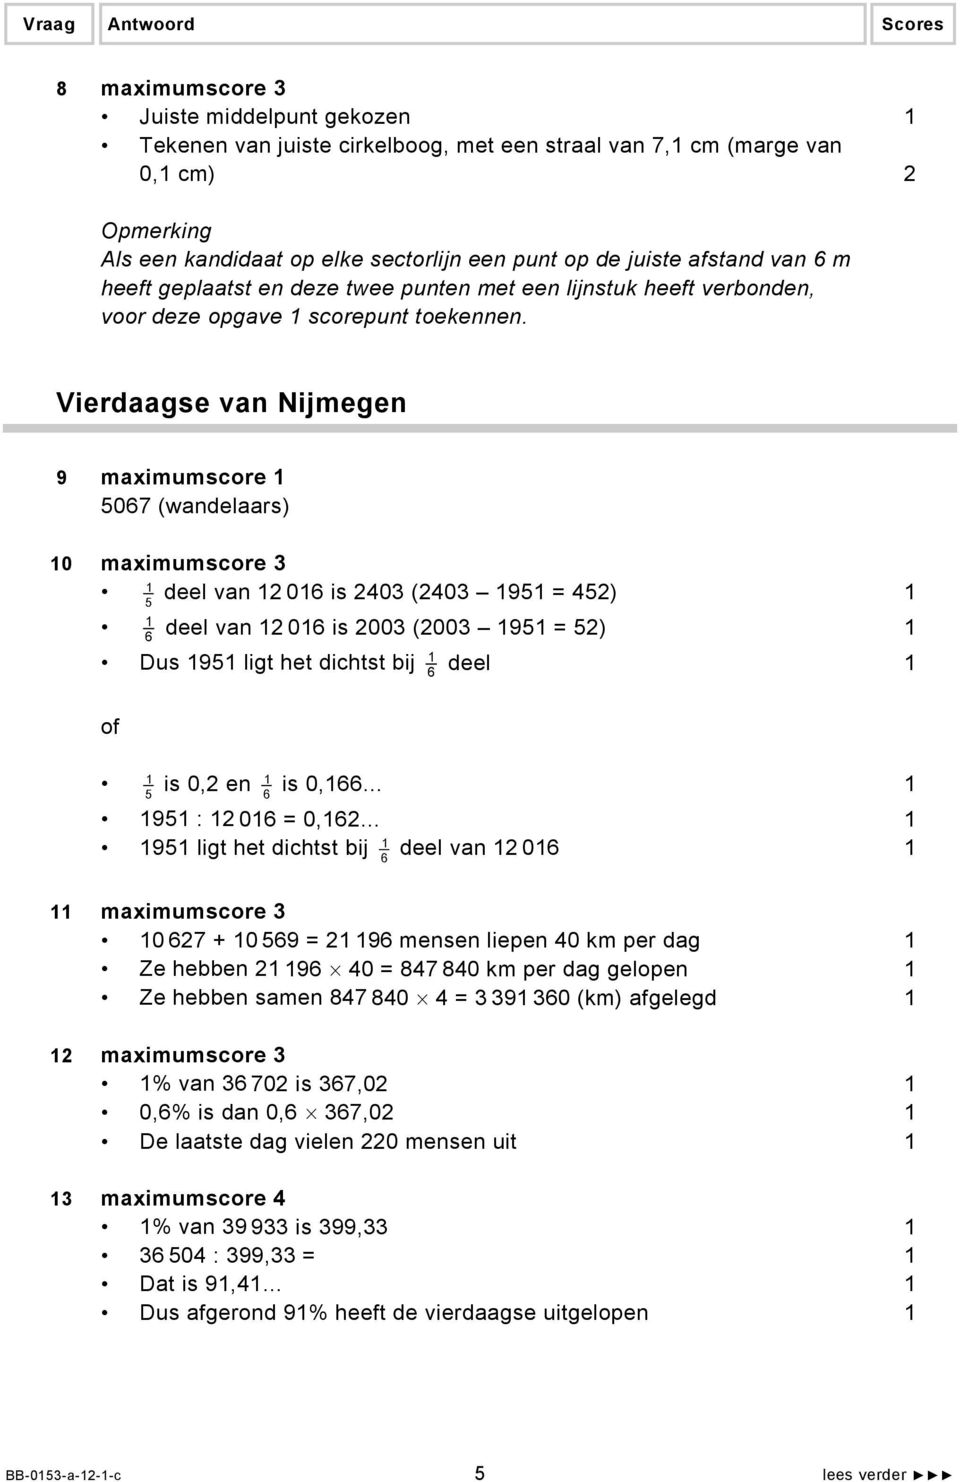 Vierdaagse van Nijmegen 9 maximumscore 5067 (wandelaars) 0 maximumscore 3 deel van 2 06 is 2403 (2403 95 = 452) 5 deel van 2 06 is 2003 (2003 95 = 52) 6 Dus 95 ligt het dichtst bij deel 6 of is 0,66